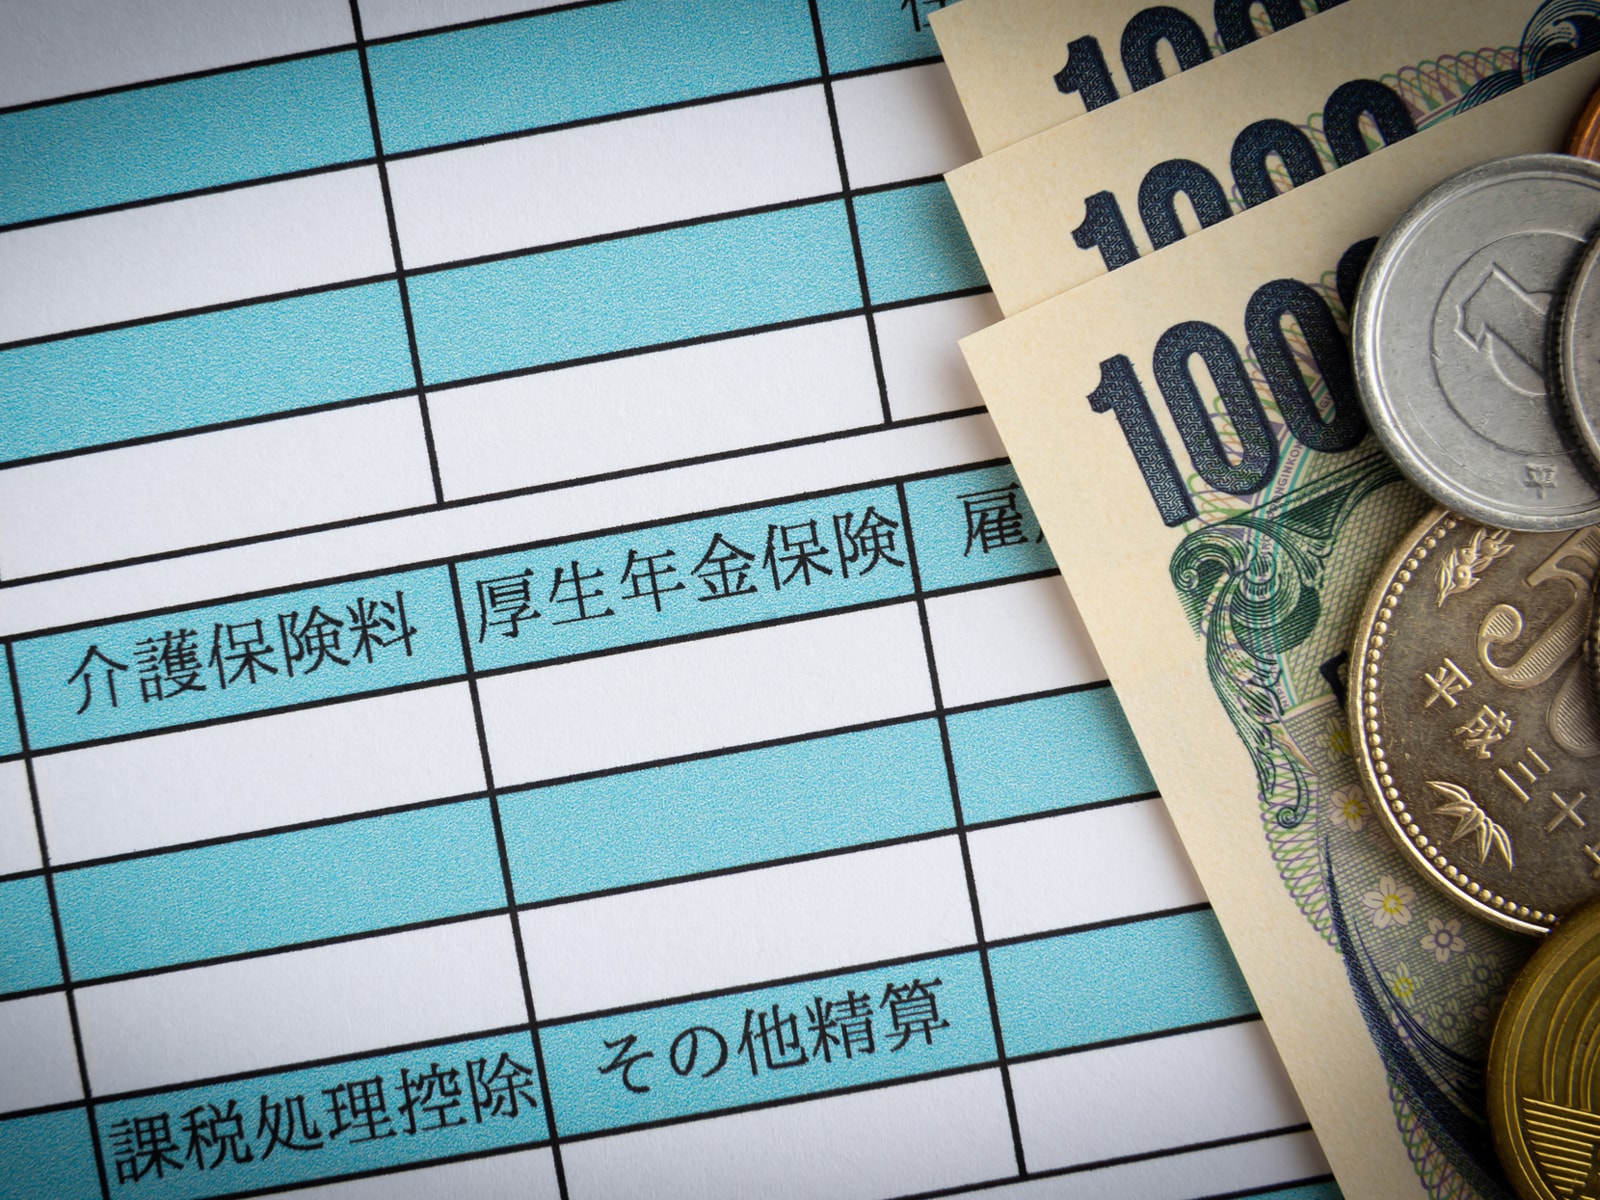 「日本の社会保険料は高すぎる！」と感じる人が増える、根本的な原因